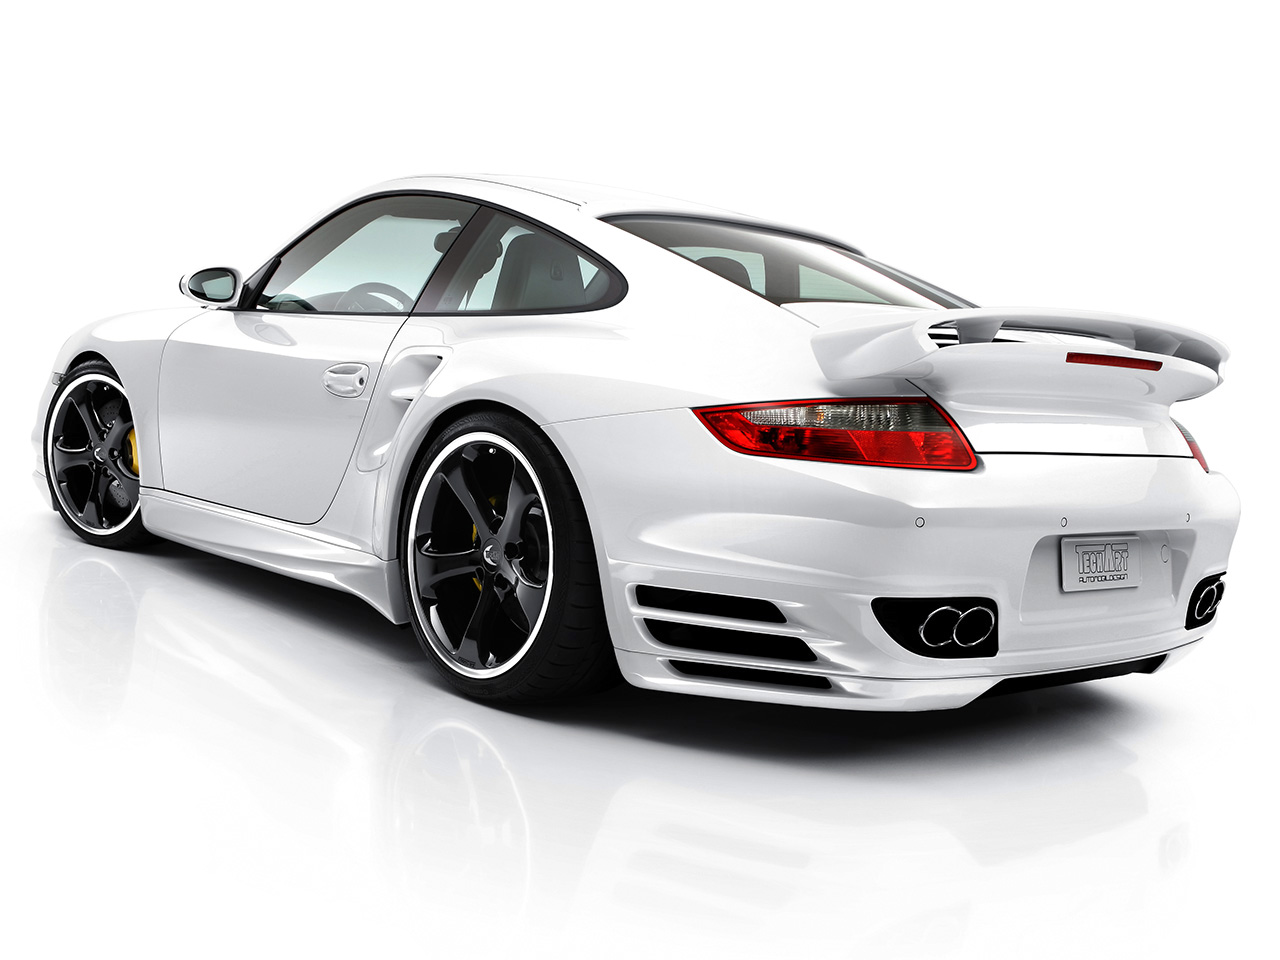 Post officiel des 996&997TT/GT2/CAB [Mettre vos photos I 2007-TechArt-Porsche-911-997-Turbo-Rear-Angle-1280x960